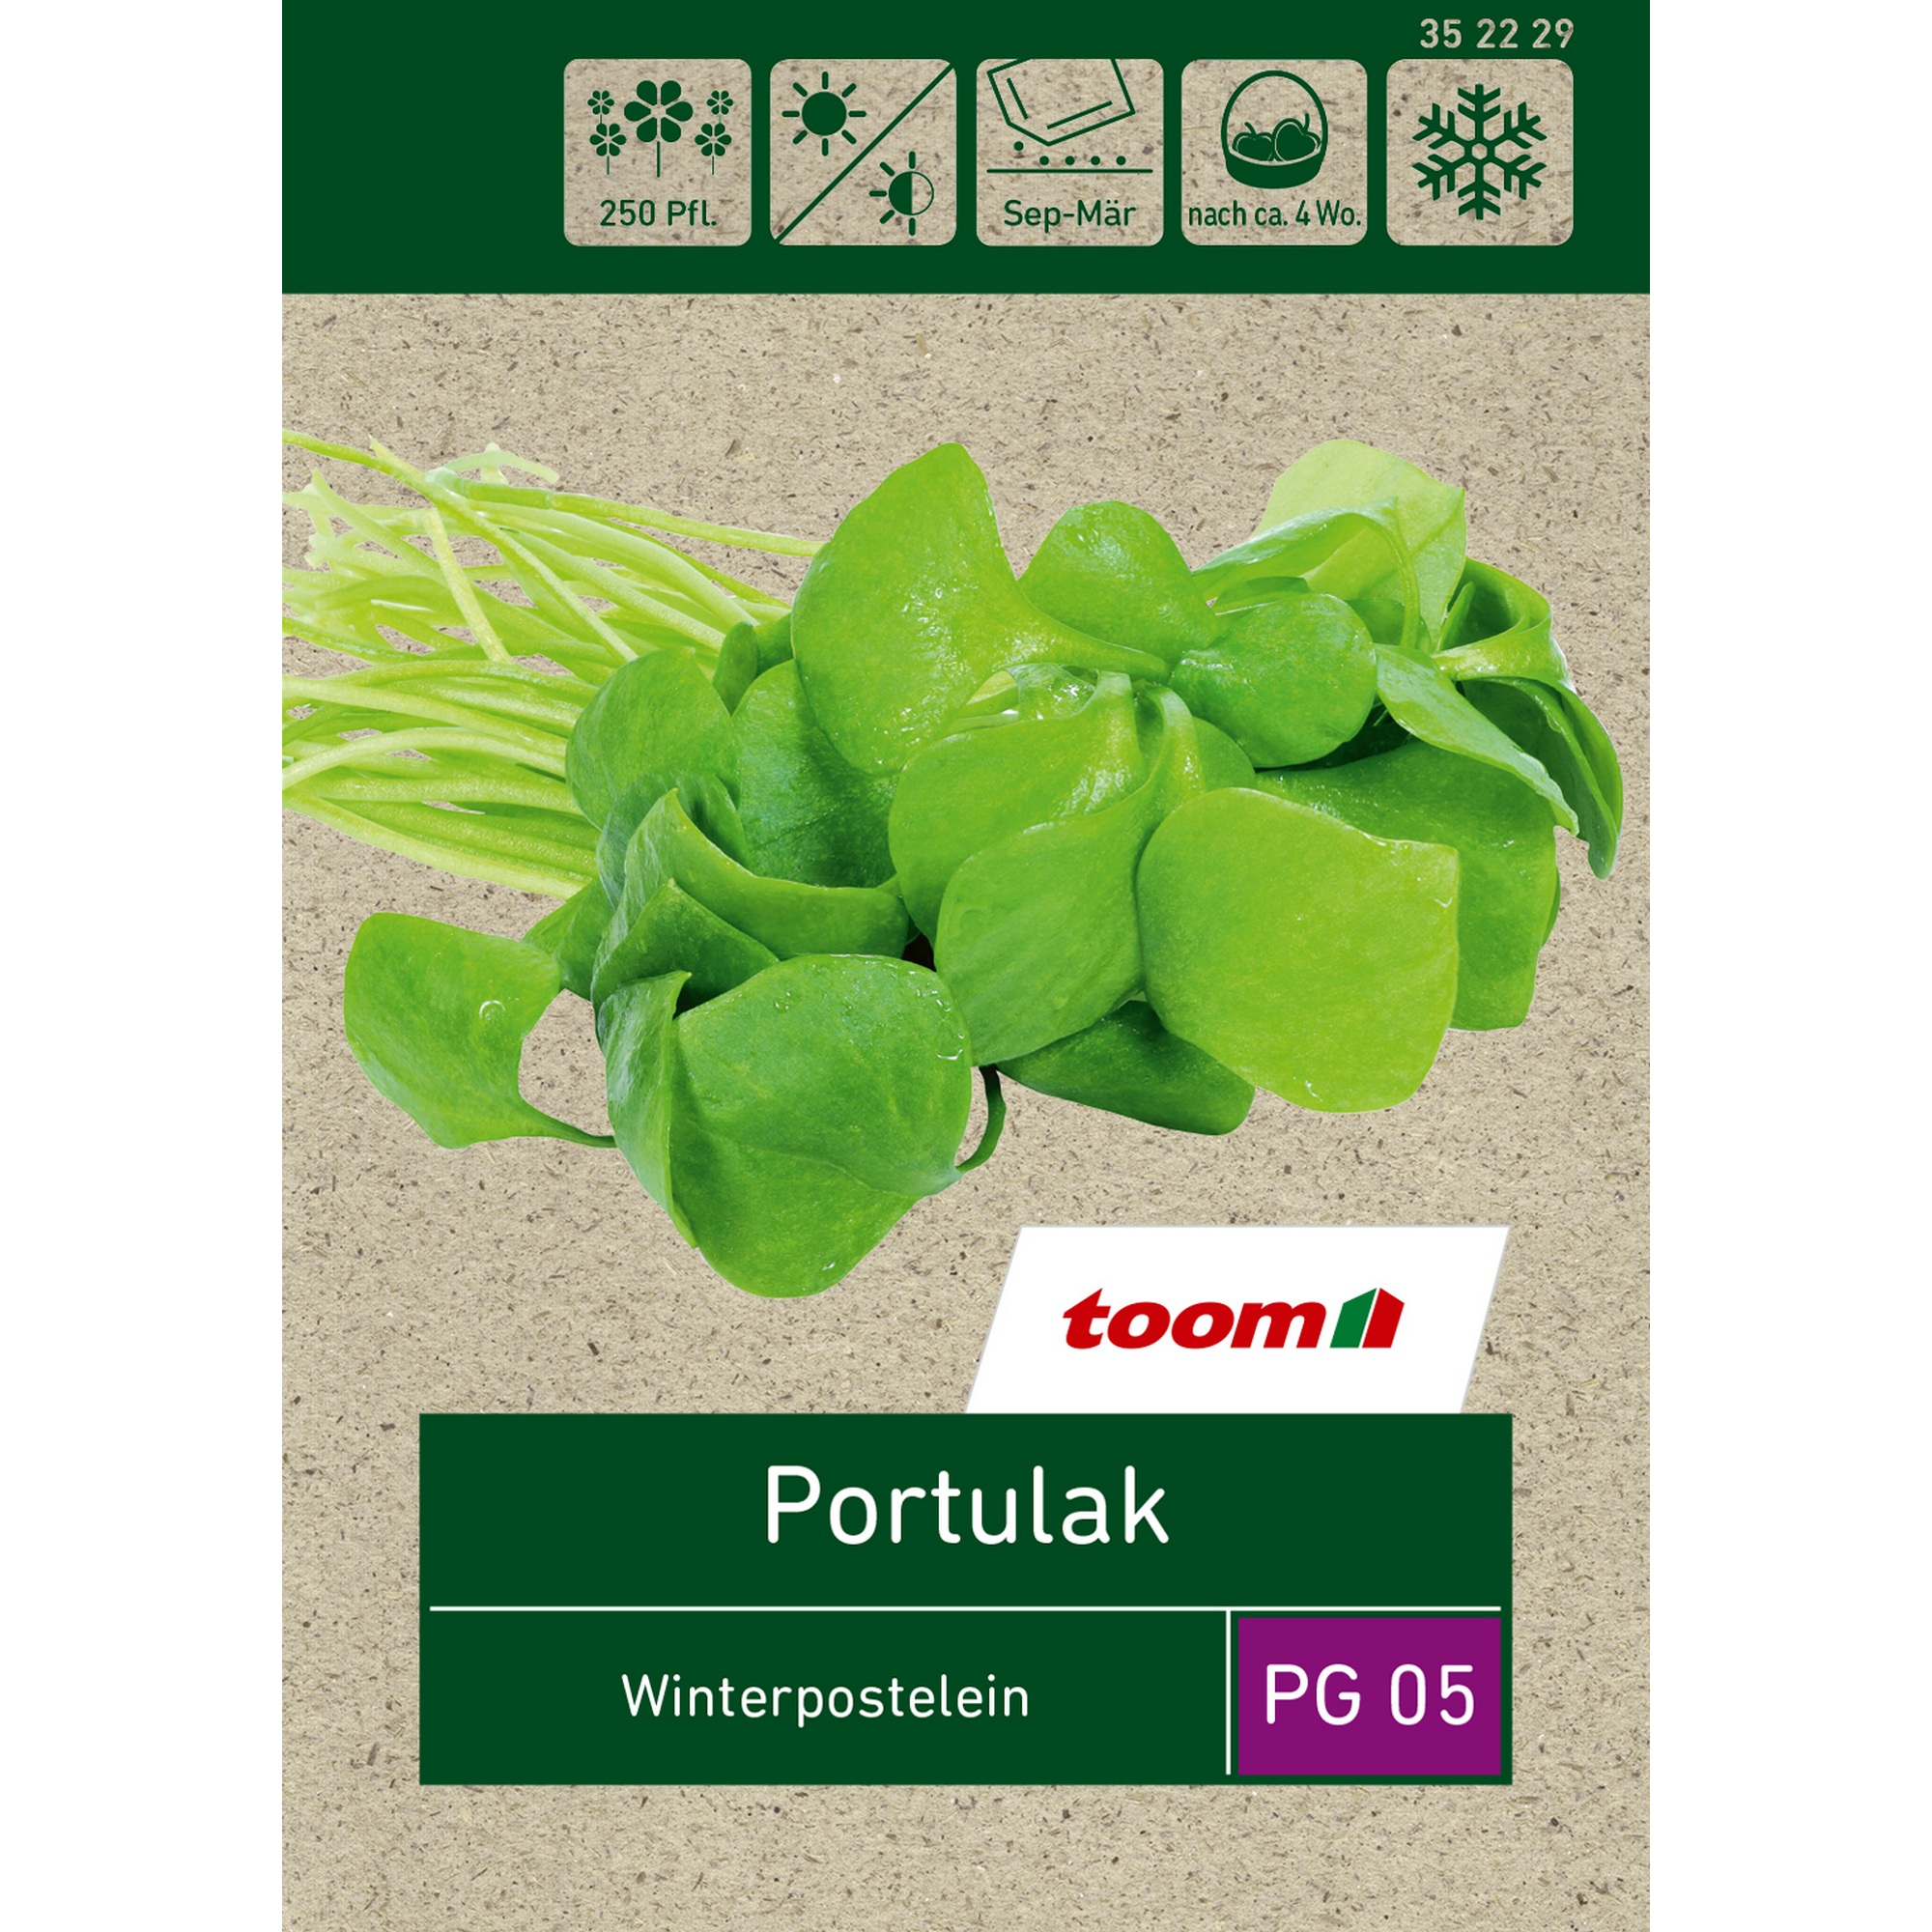 Portulak 'Winterpostelein' + product picture